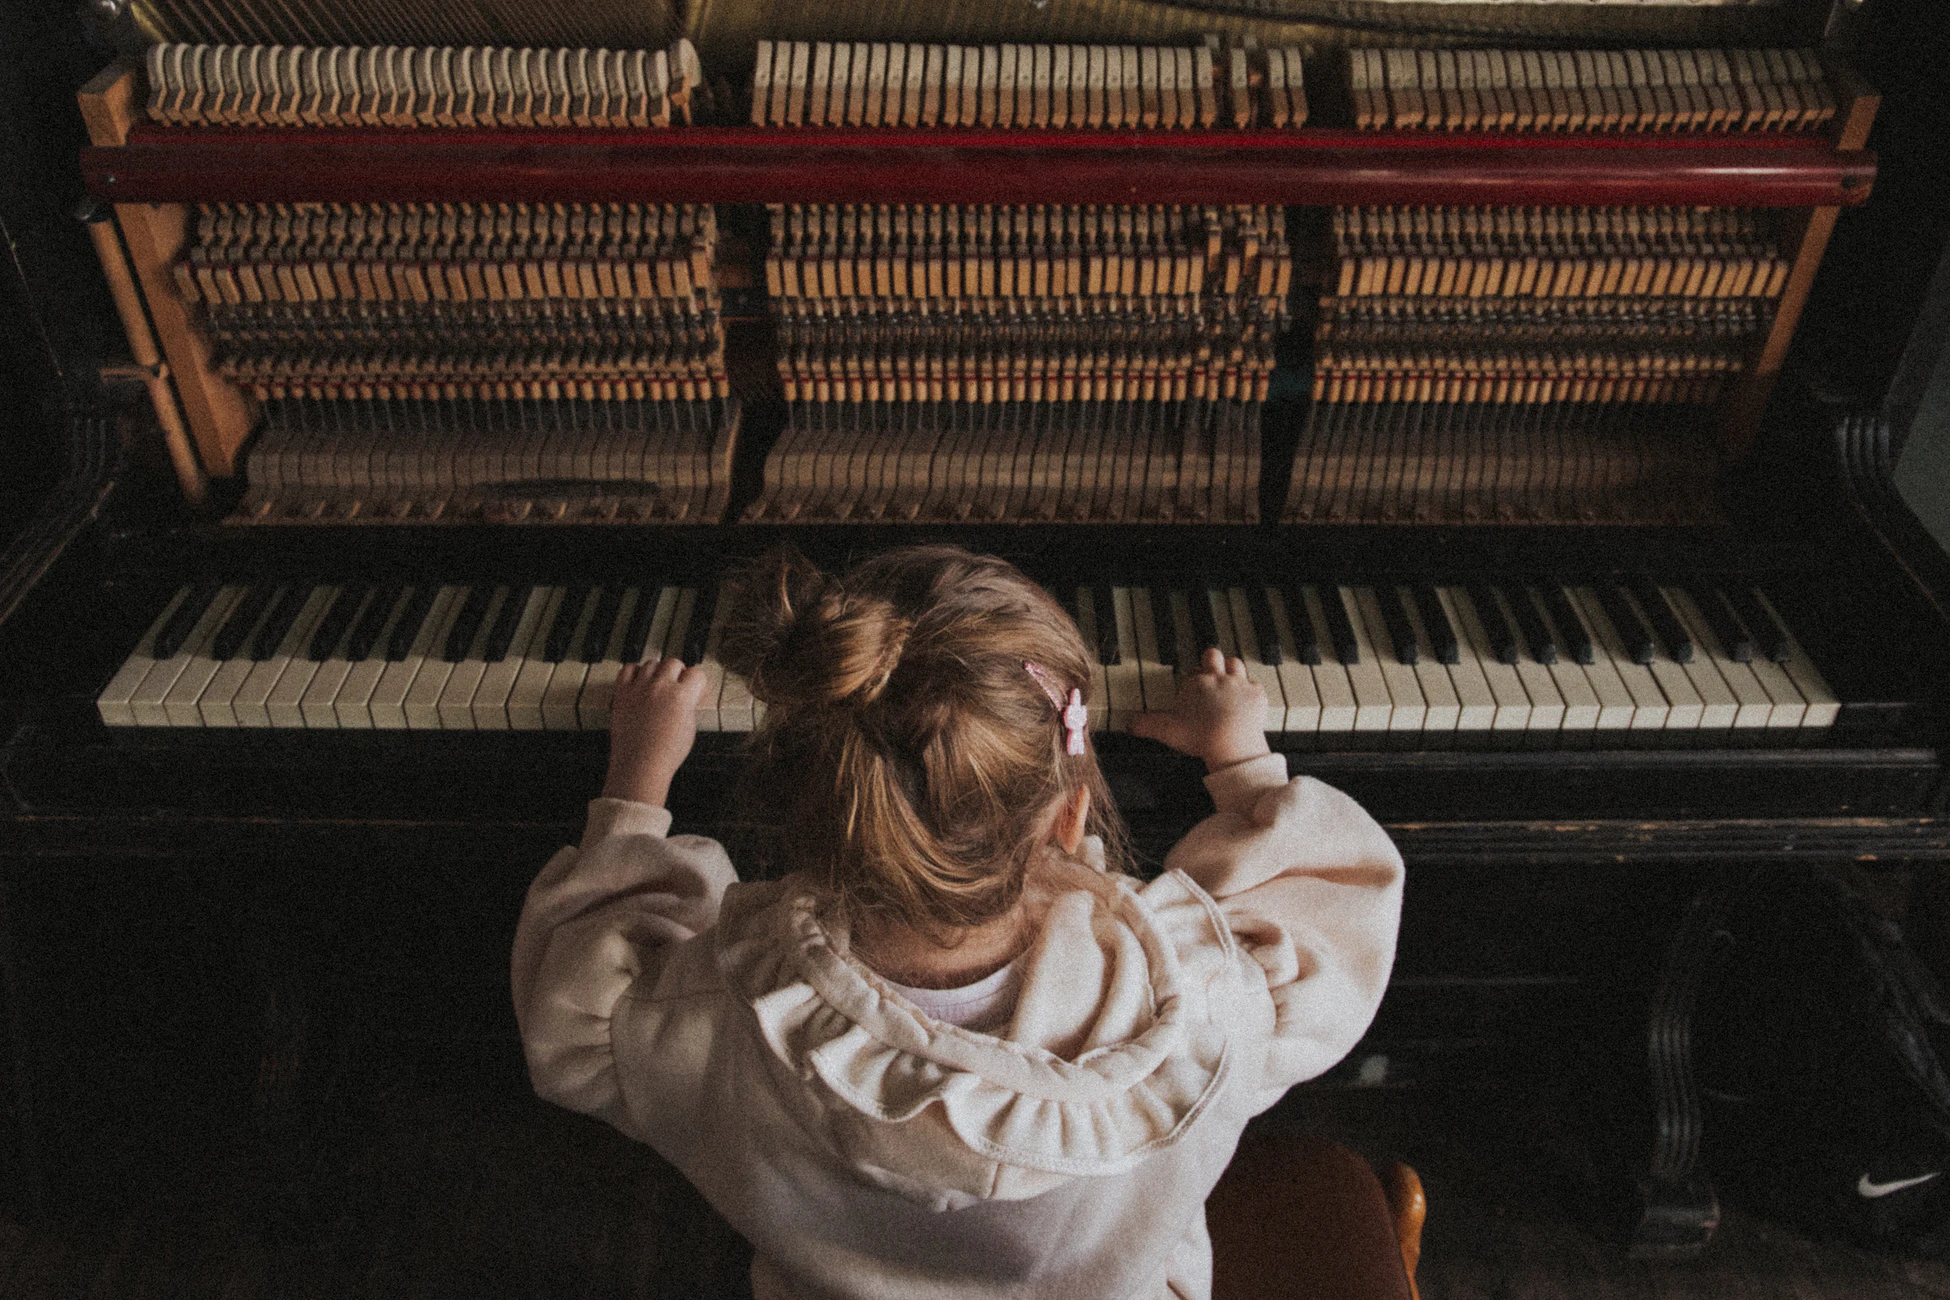 10 bonnes raisons de débuter le piano enfant